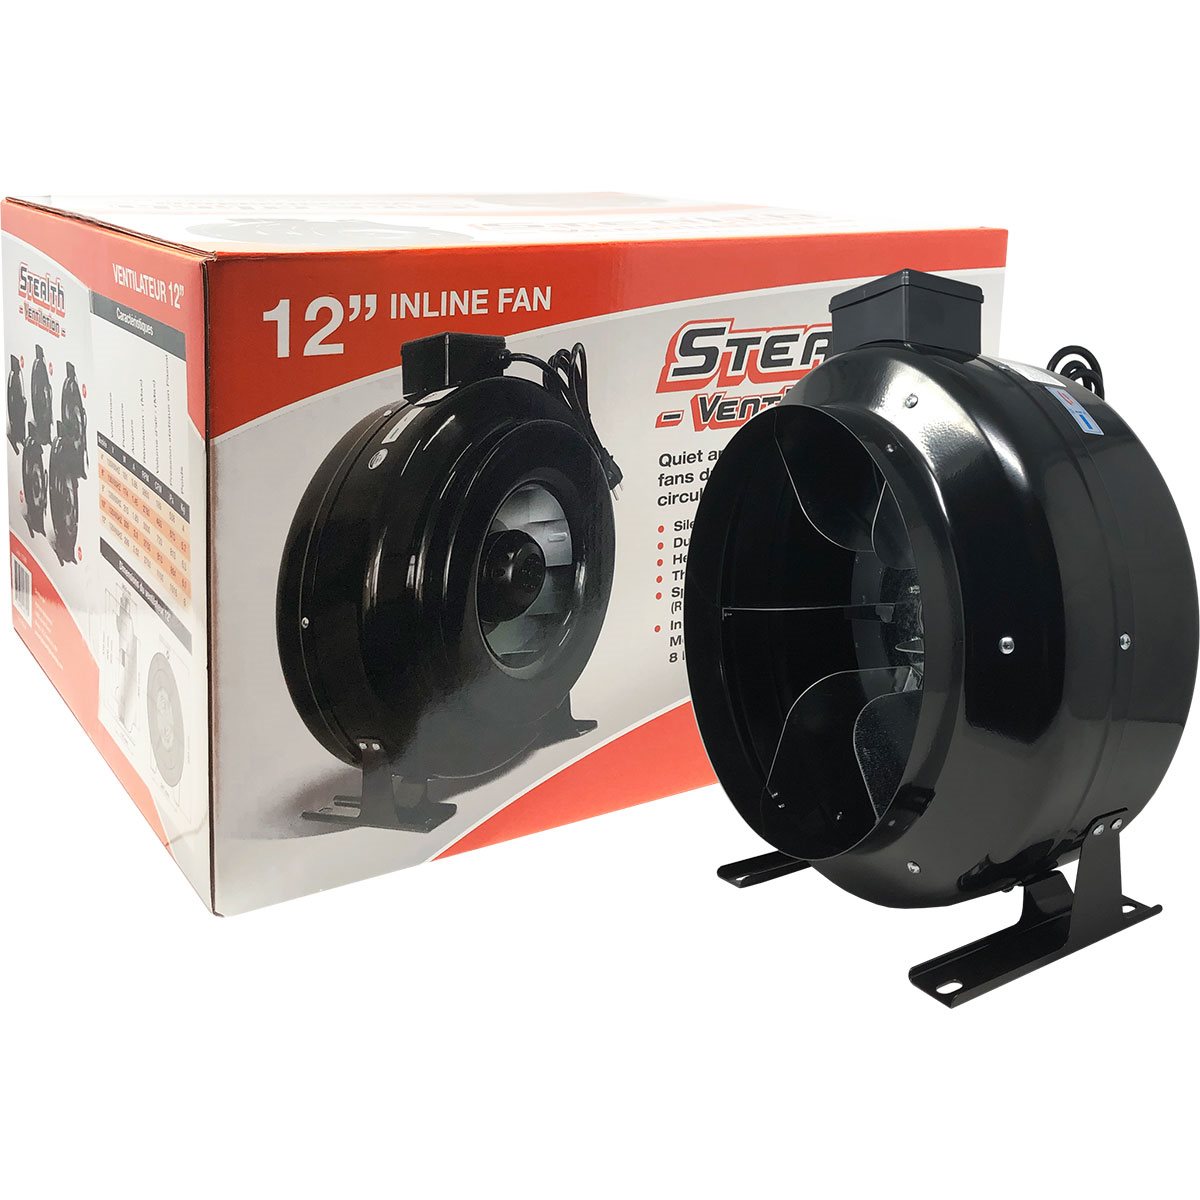 Product Image:Ventilateur en ligne Stealth 120V 12